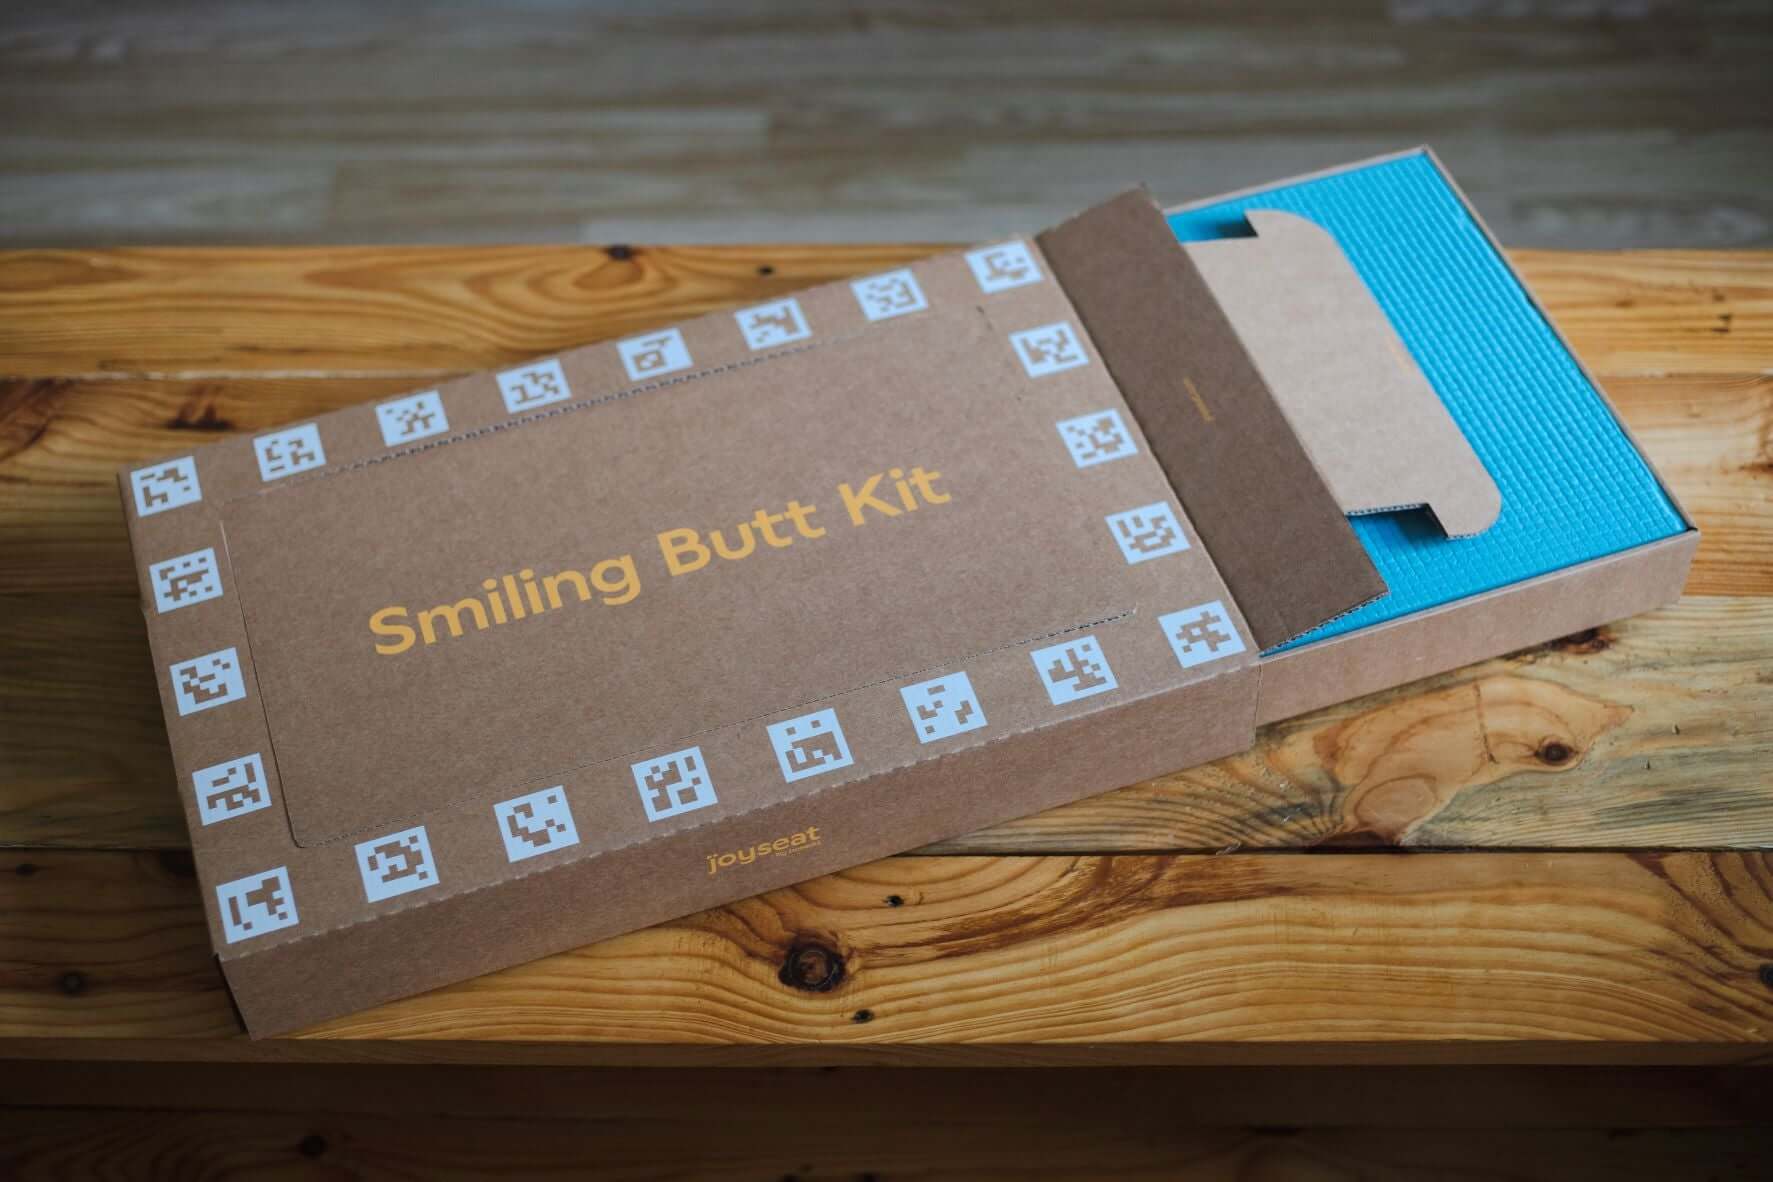 Smiling Butt Kit user guide